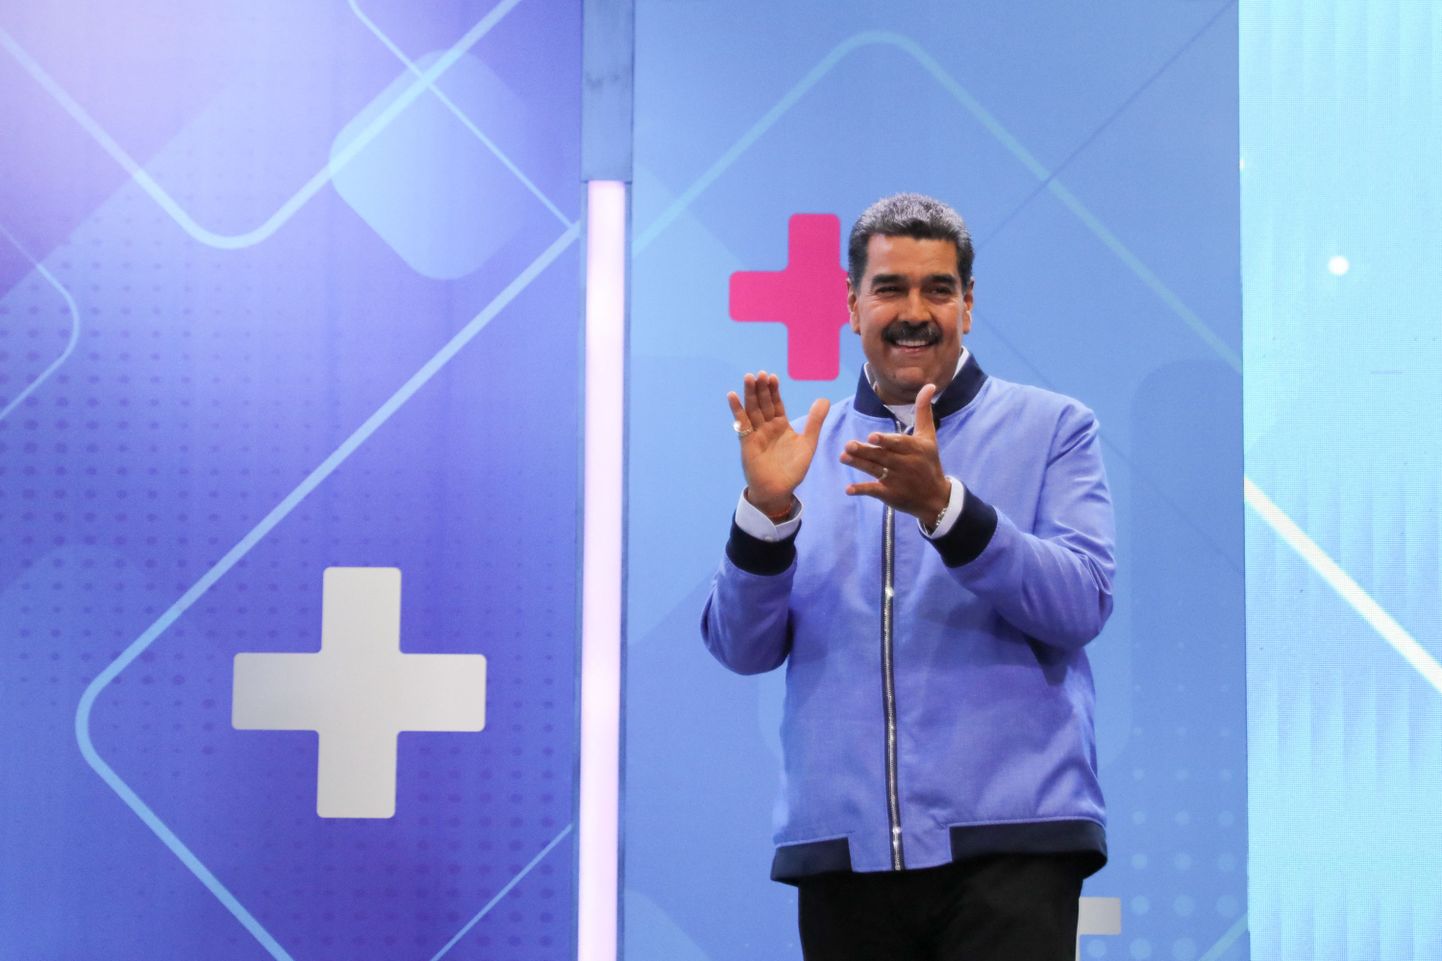 President Nicolás Maduro televisioonis.